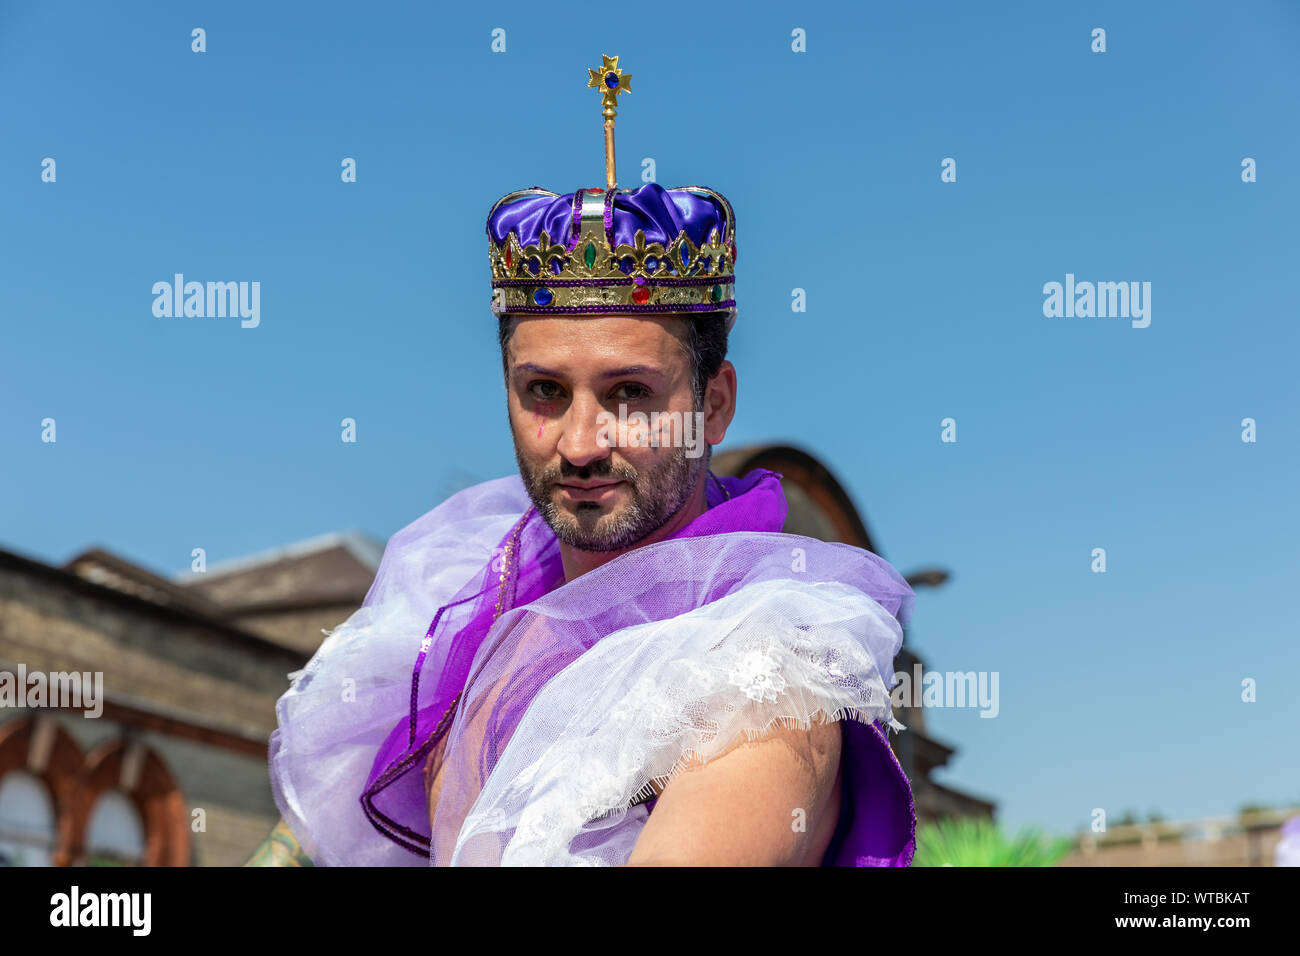 Un défilé participant portant une couronne ornée de pose pour l'appareil photo pendant le carnaval de Notting Hill le lundi 26 août 2019 Banque D'Images